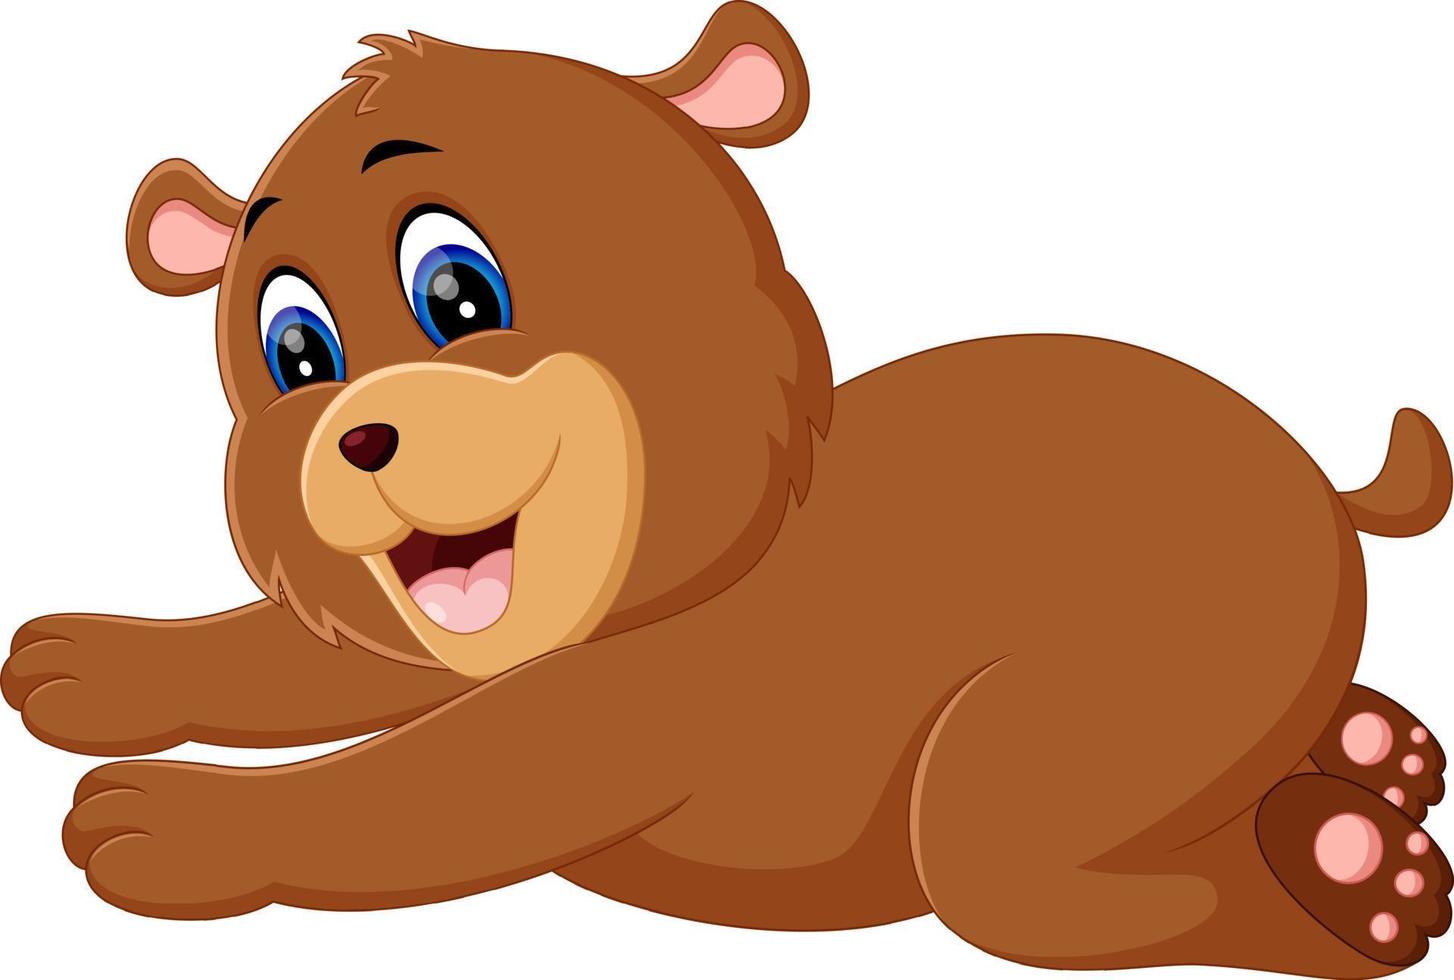 illustrazione del simpatico cartone animato orso vettore